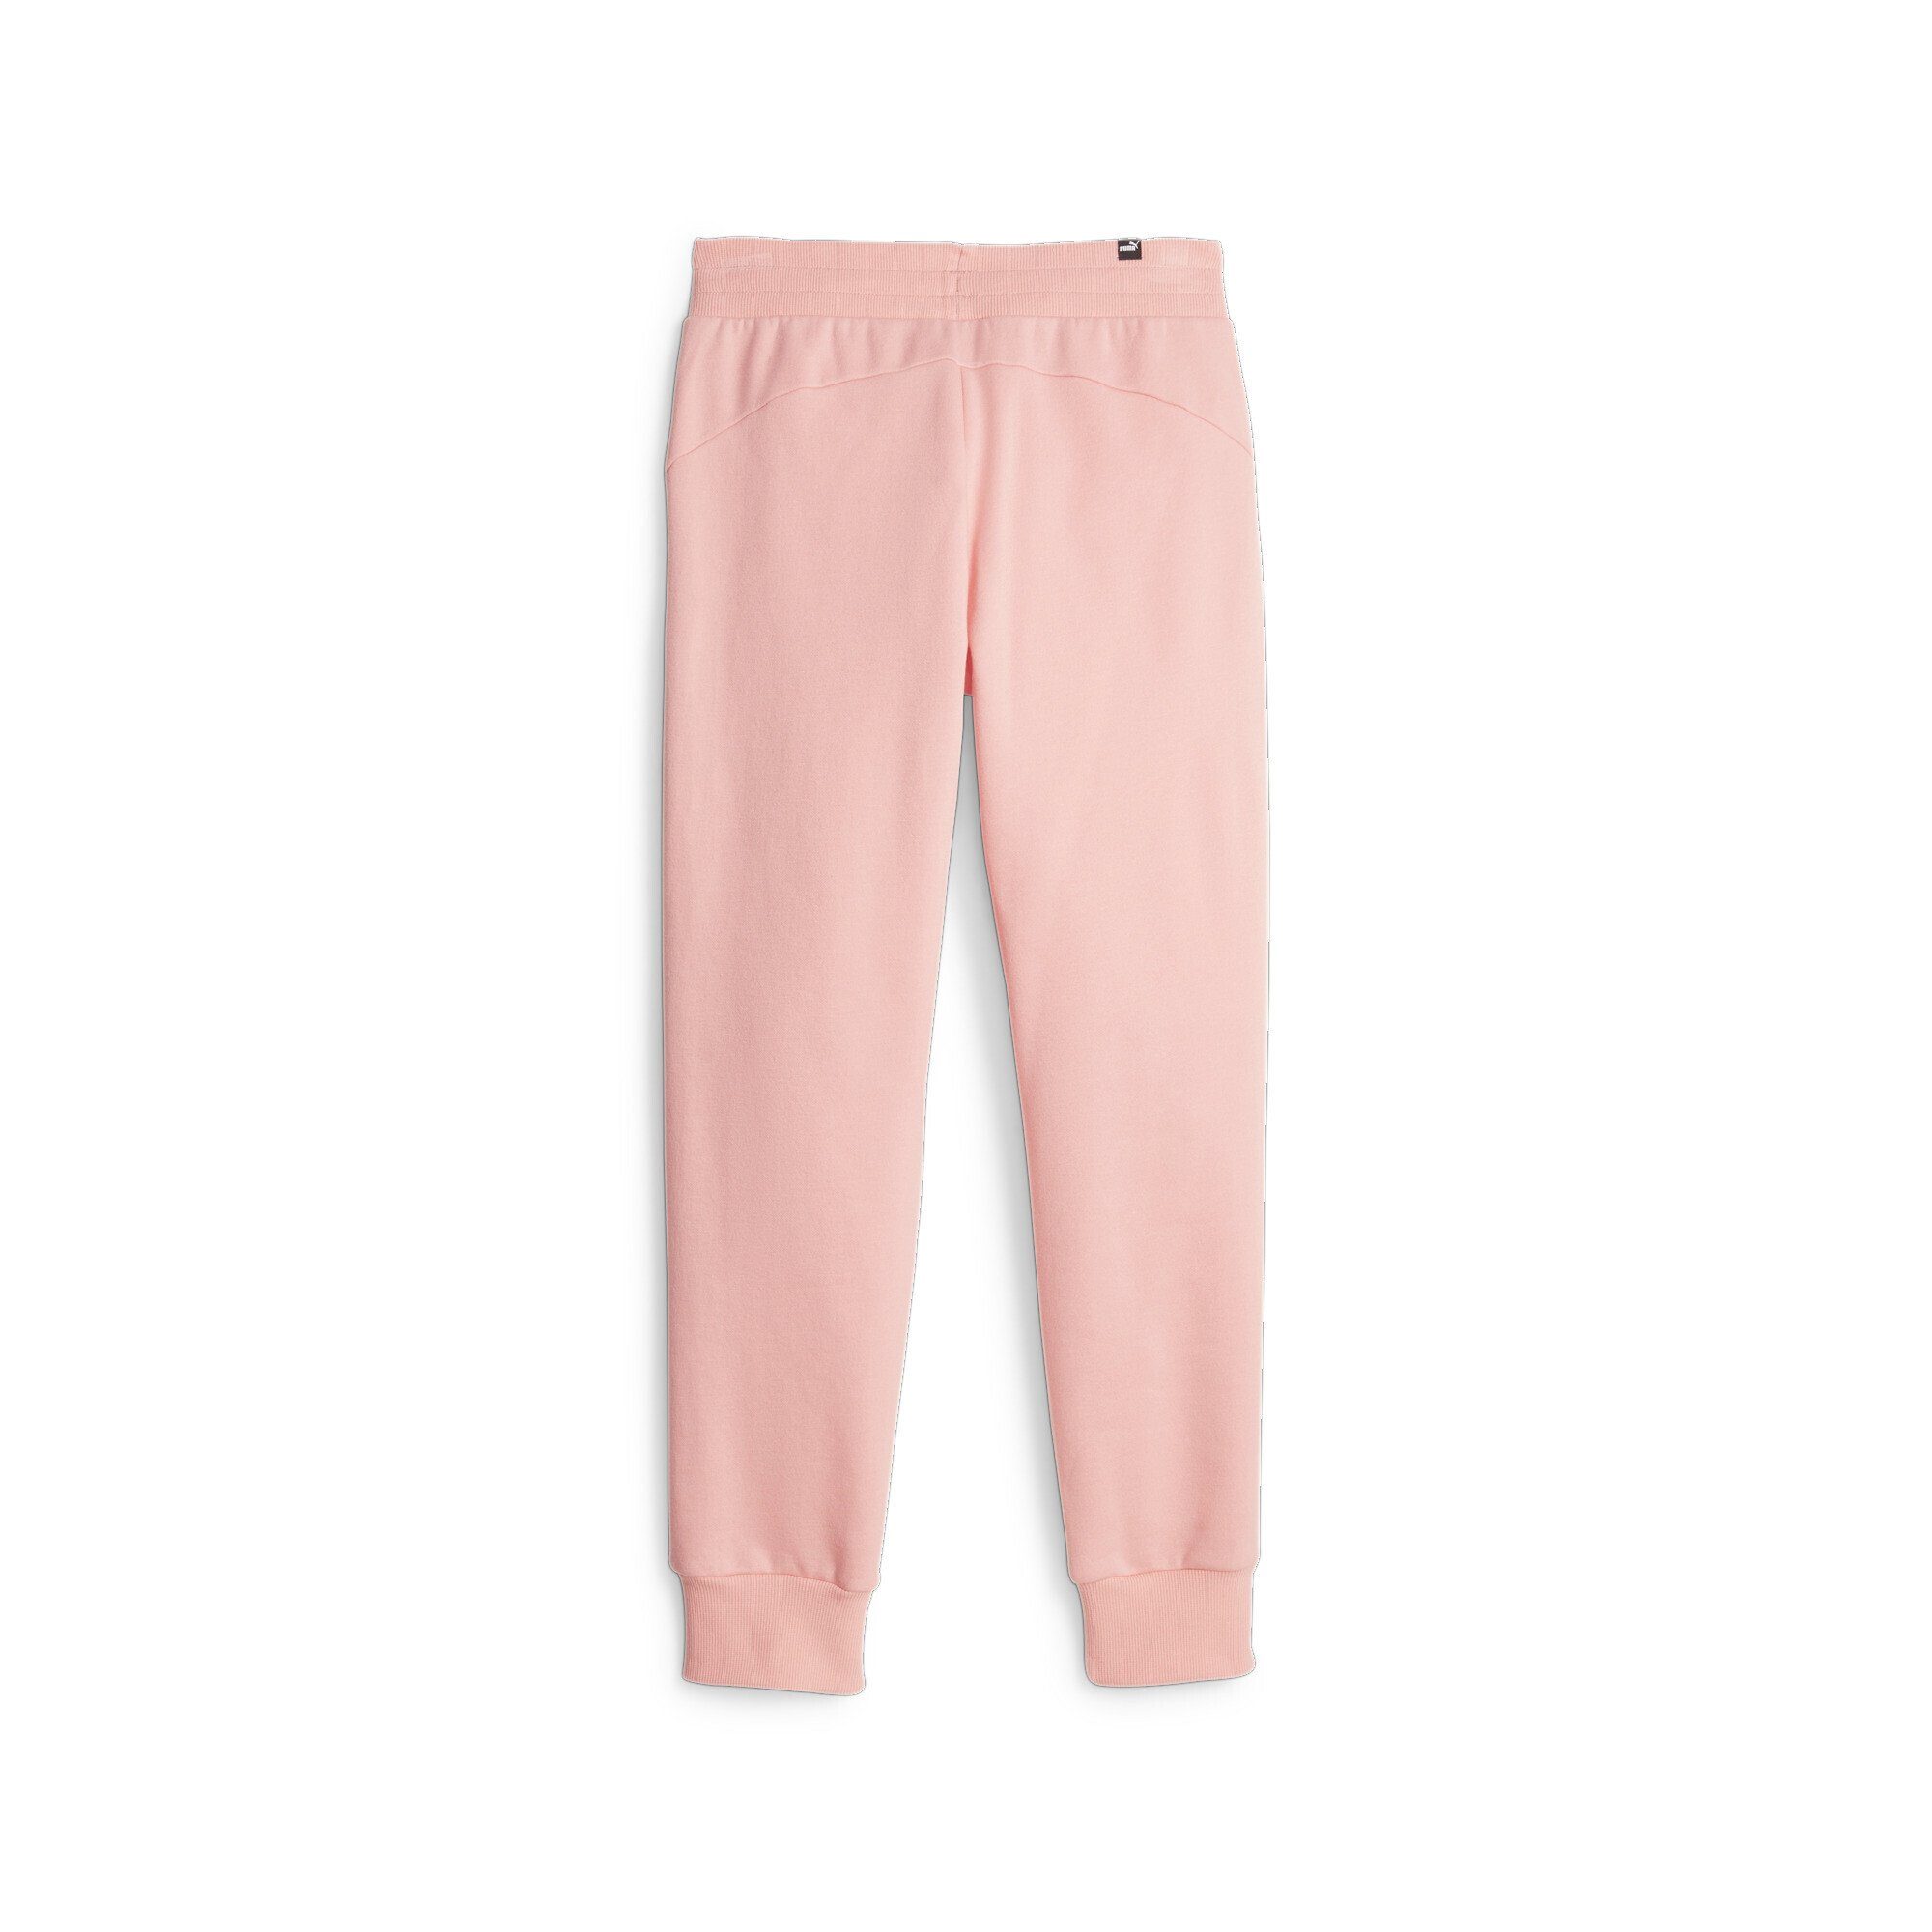 PUMA Sporthose Smoothie Pink Essentials Jogginghose Peach Damen